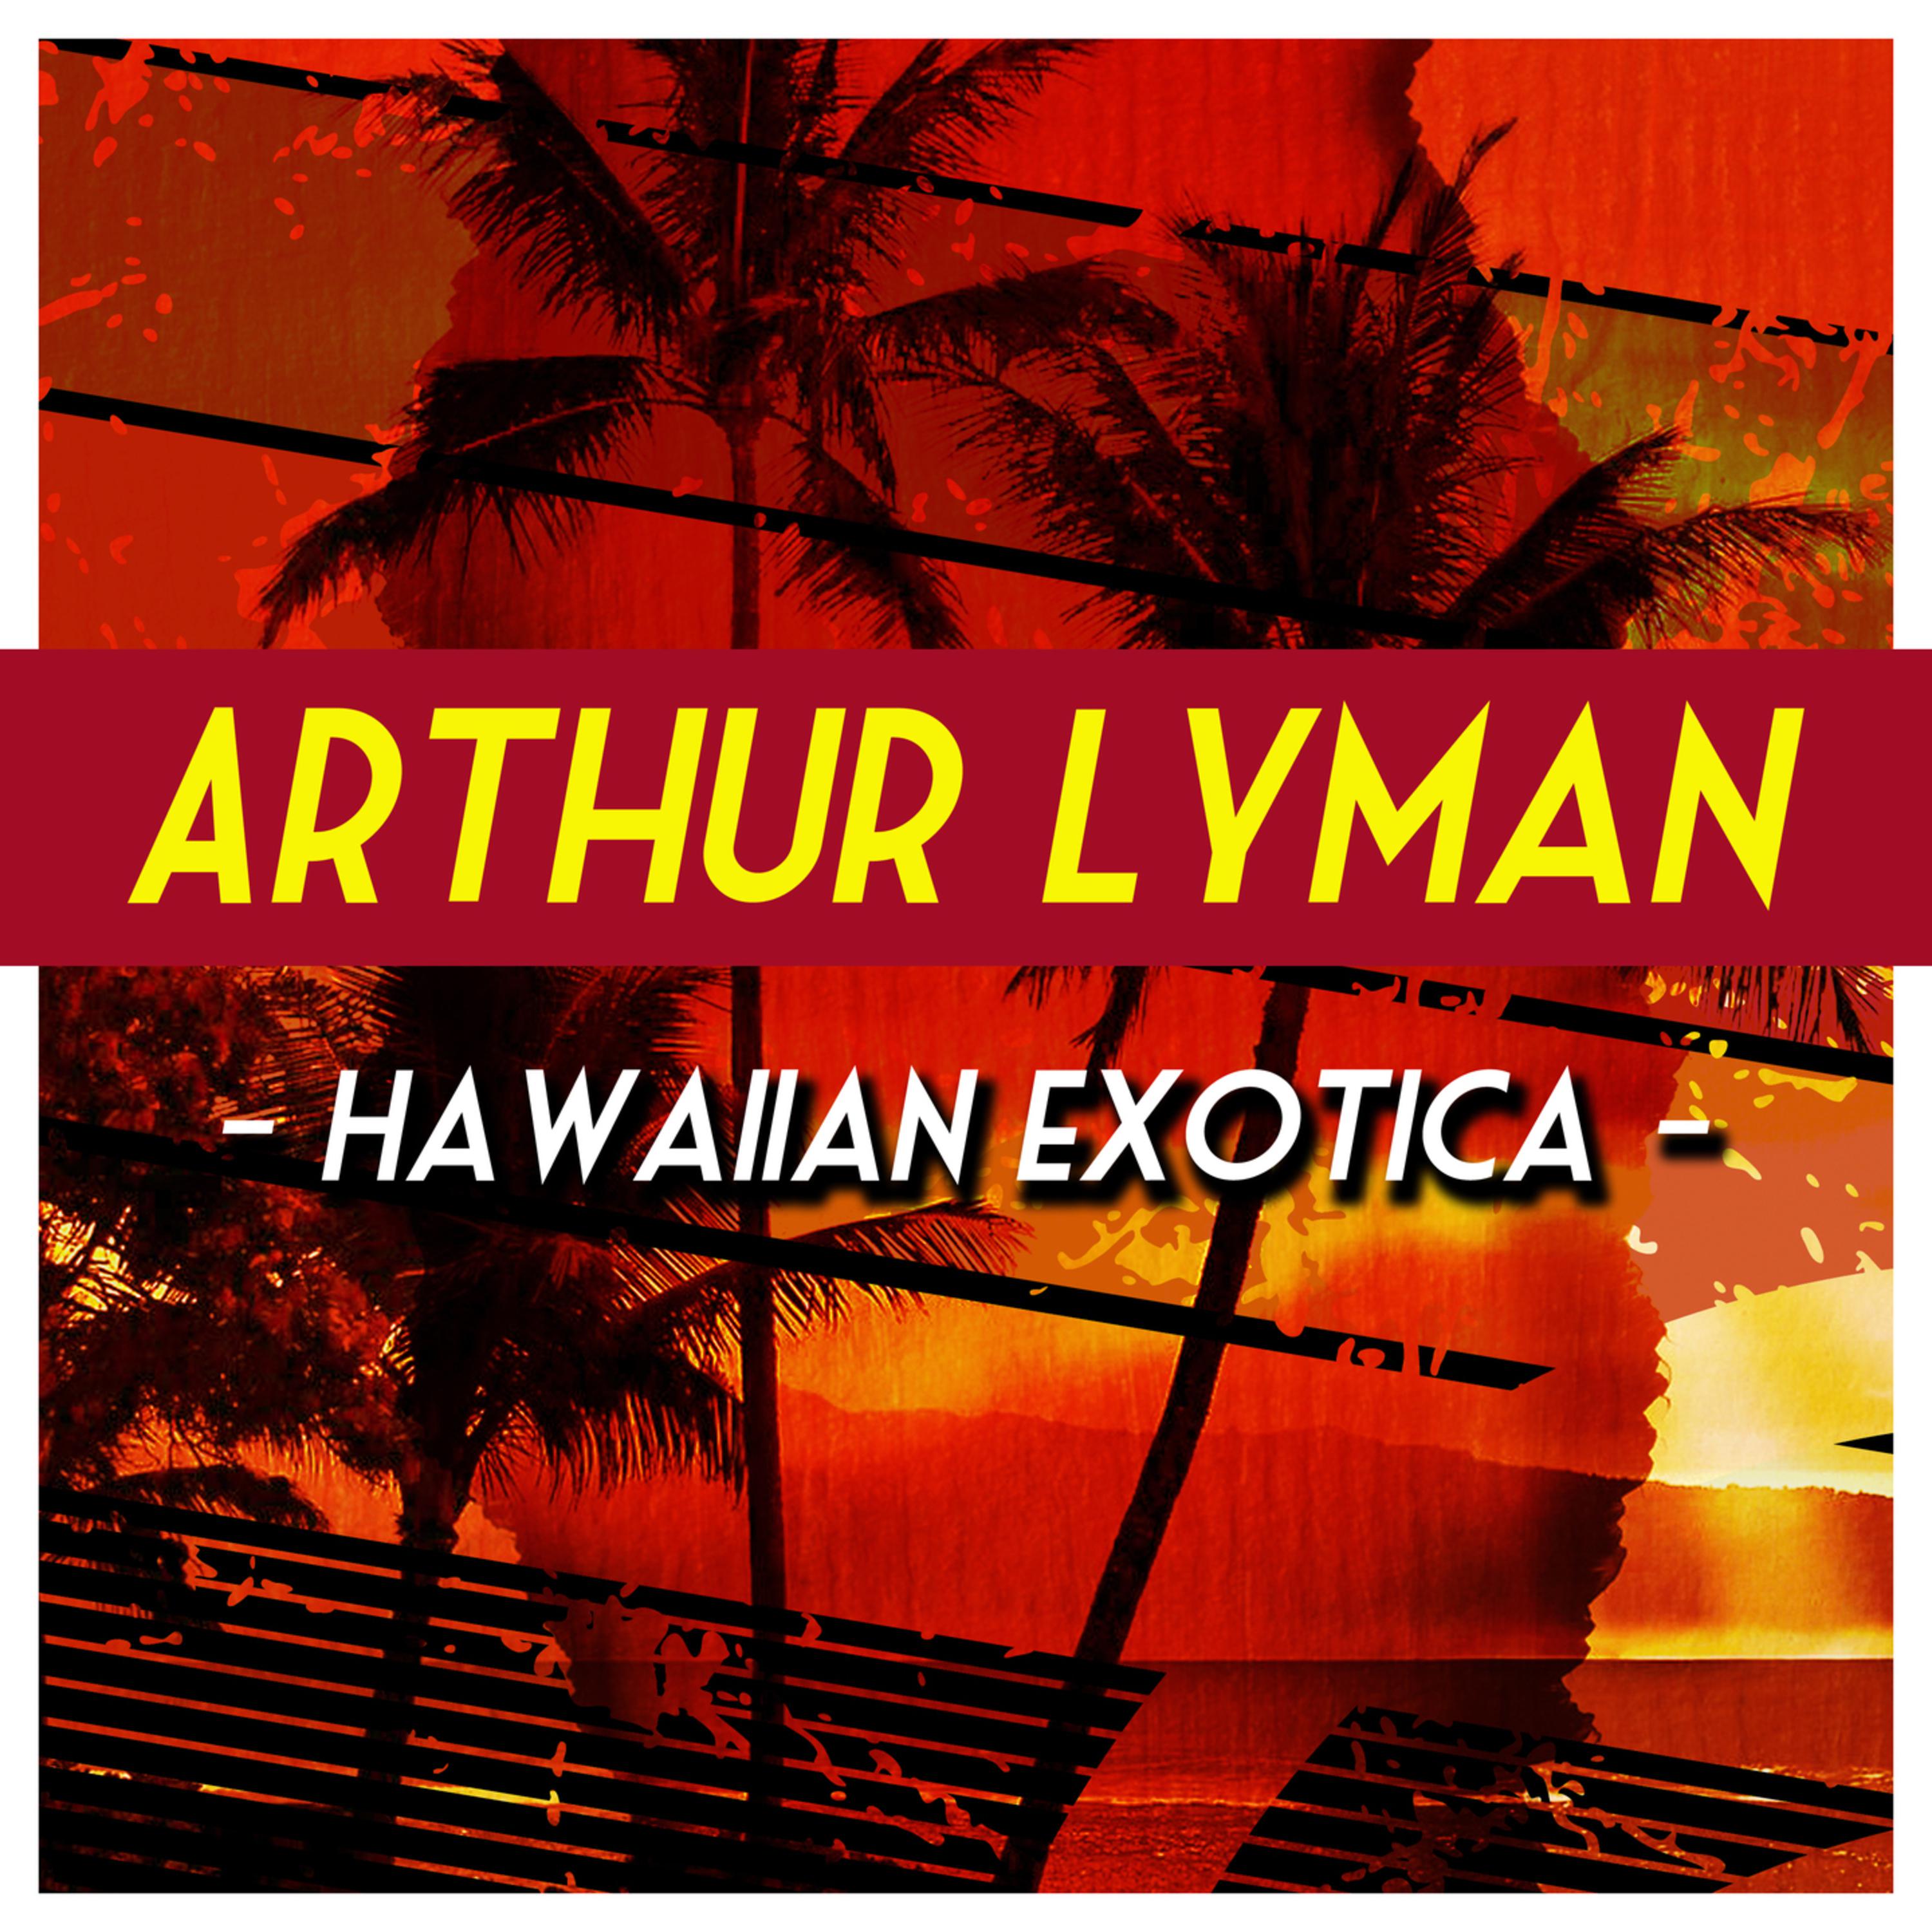 Hawaiian Exotica